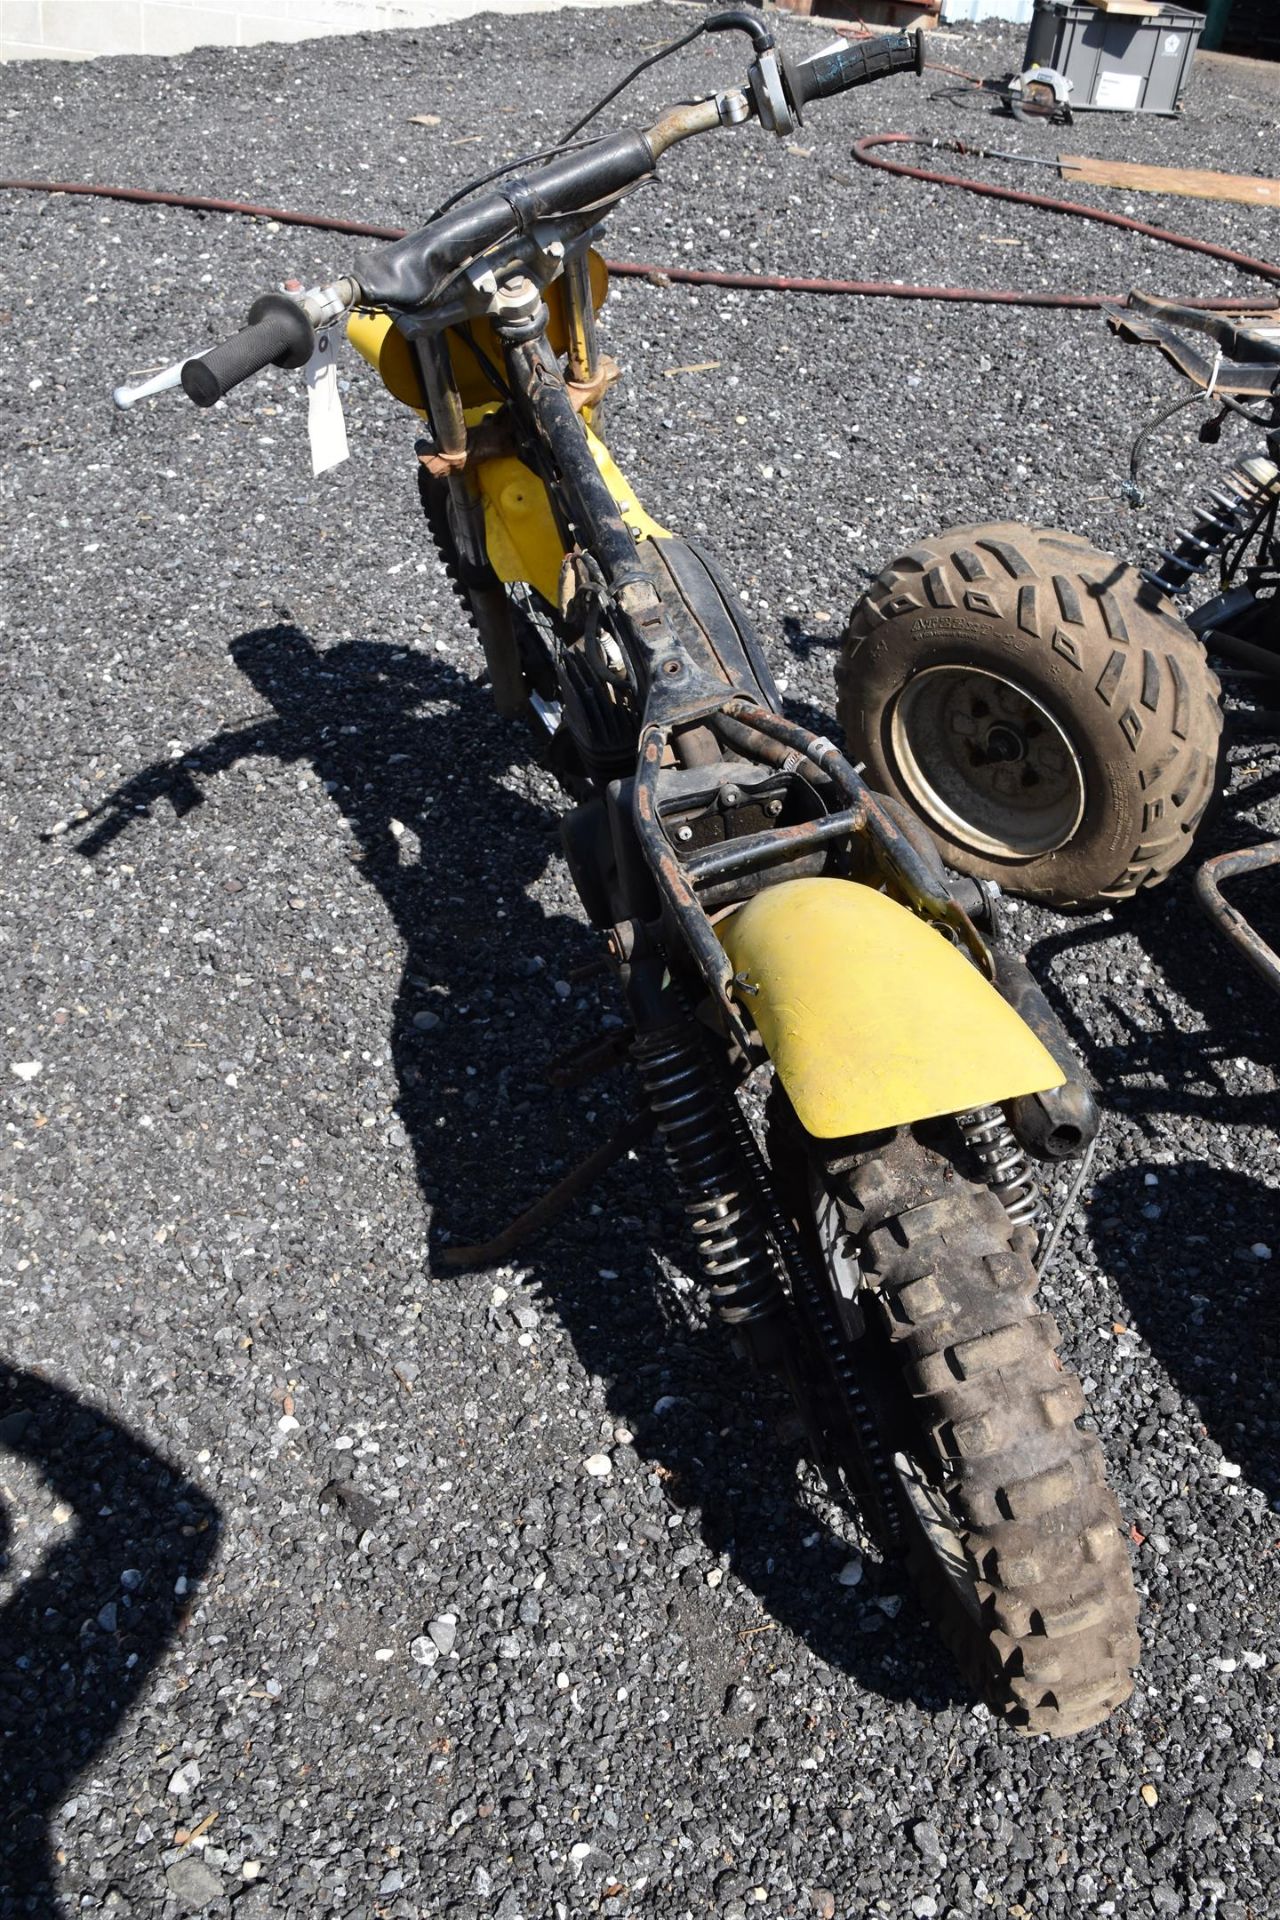 Dirt Bike Yellow - Image 3 of 10